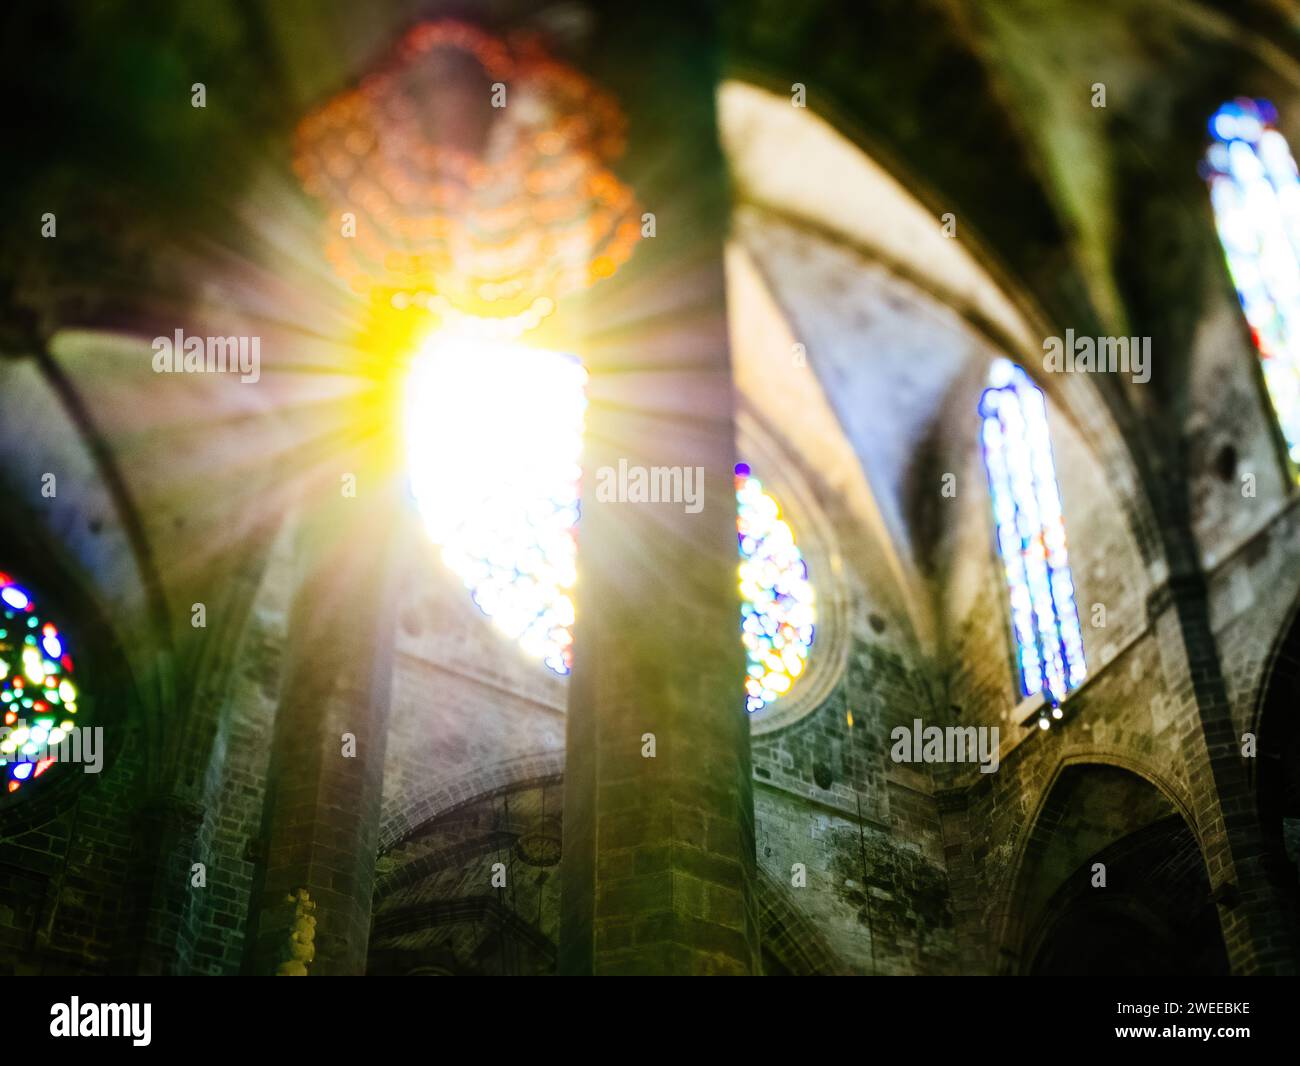 La calda luce del sole filtra attraverso una vetrata colorata della Catedral-Basilica de Santa Maria a Palma di Maiorca, Spagna, proiettando riflessi colorati, catturati con una lente inclinabile. Foto Stock